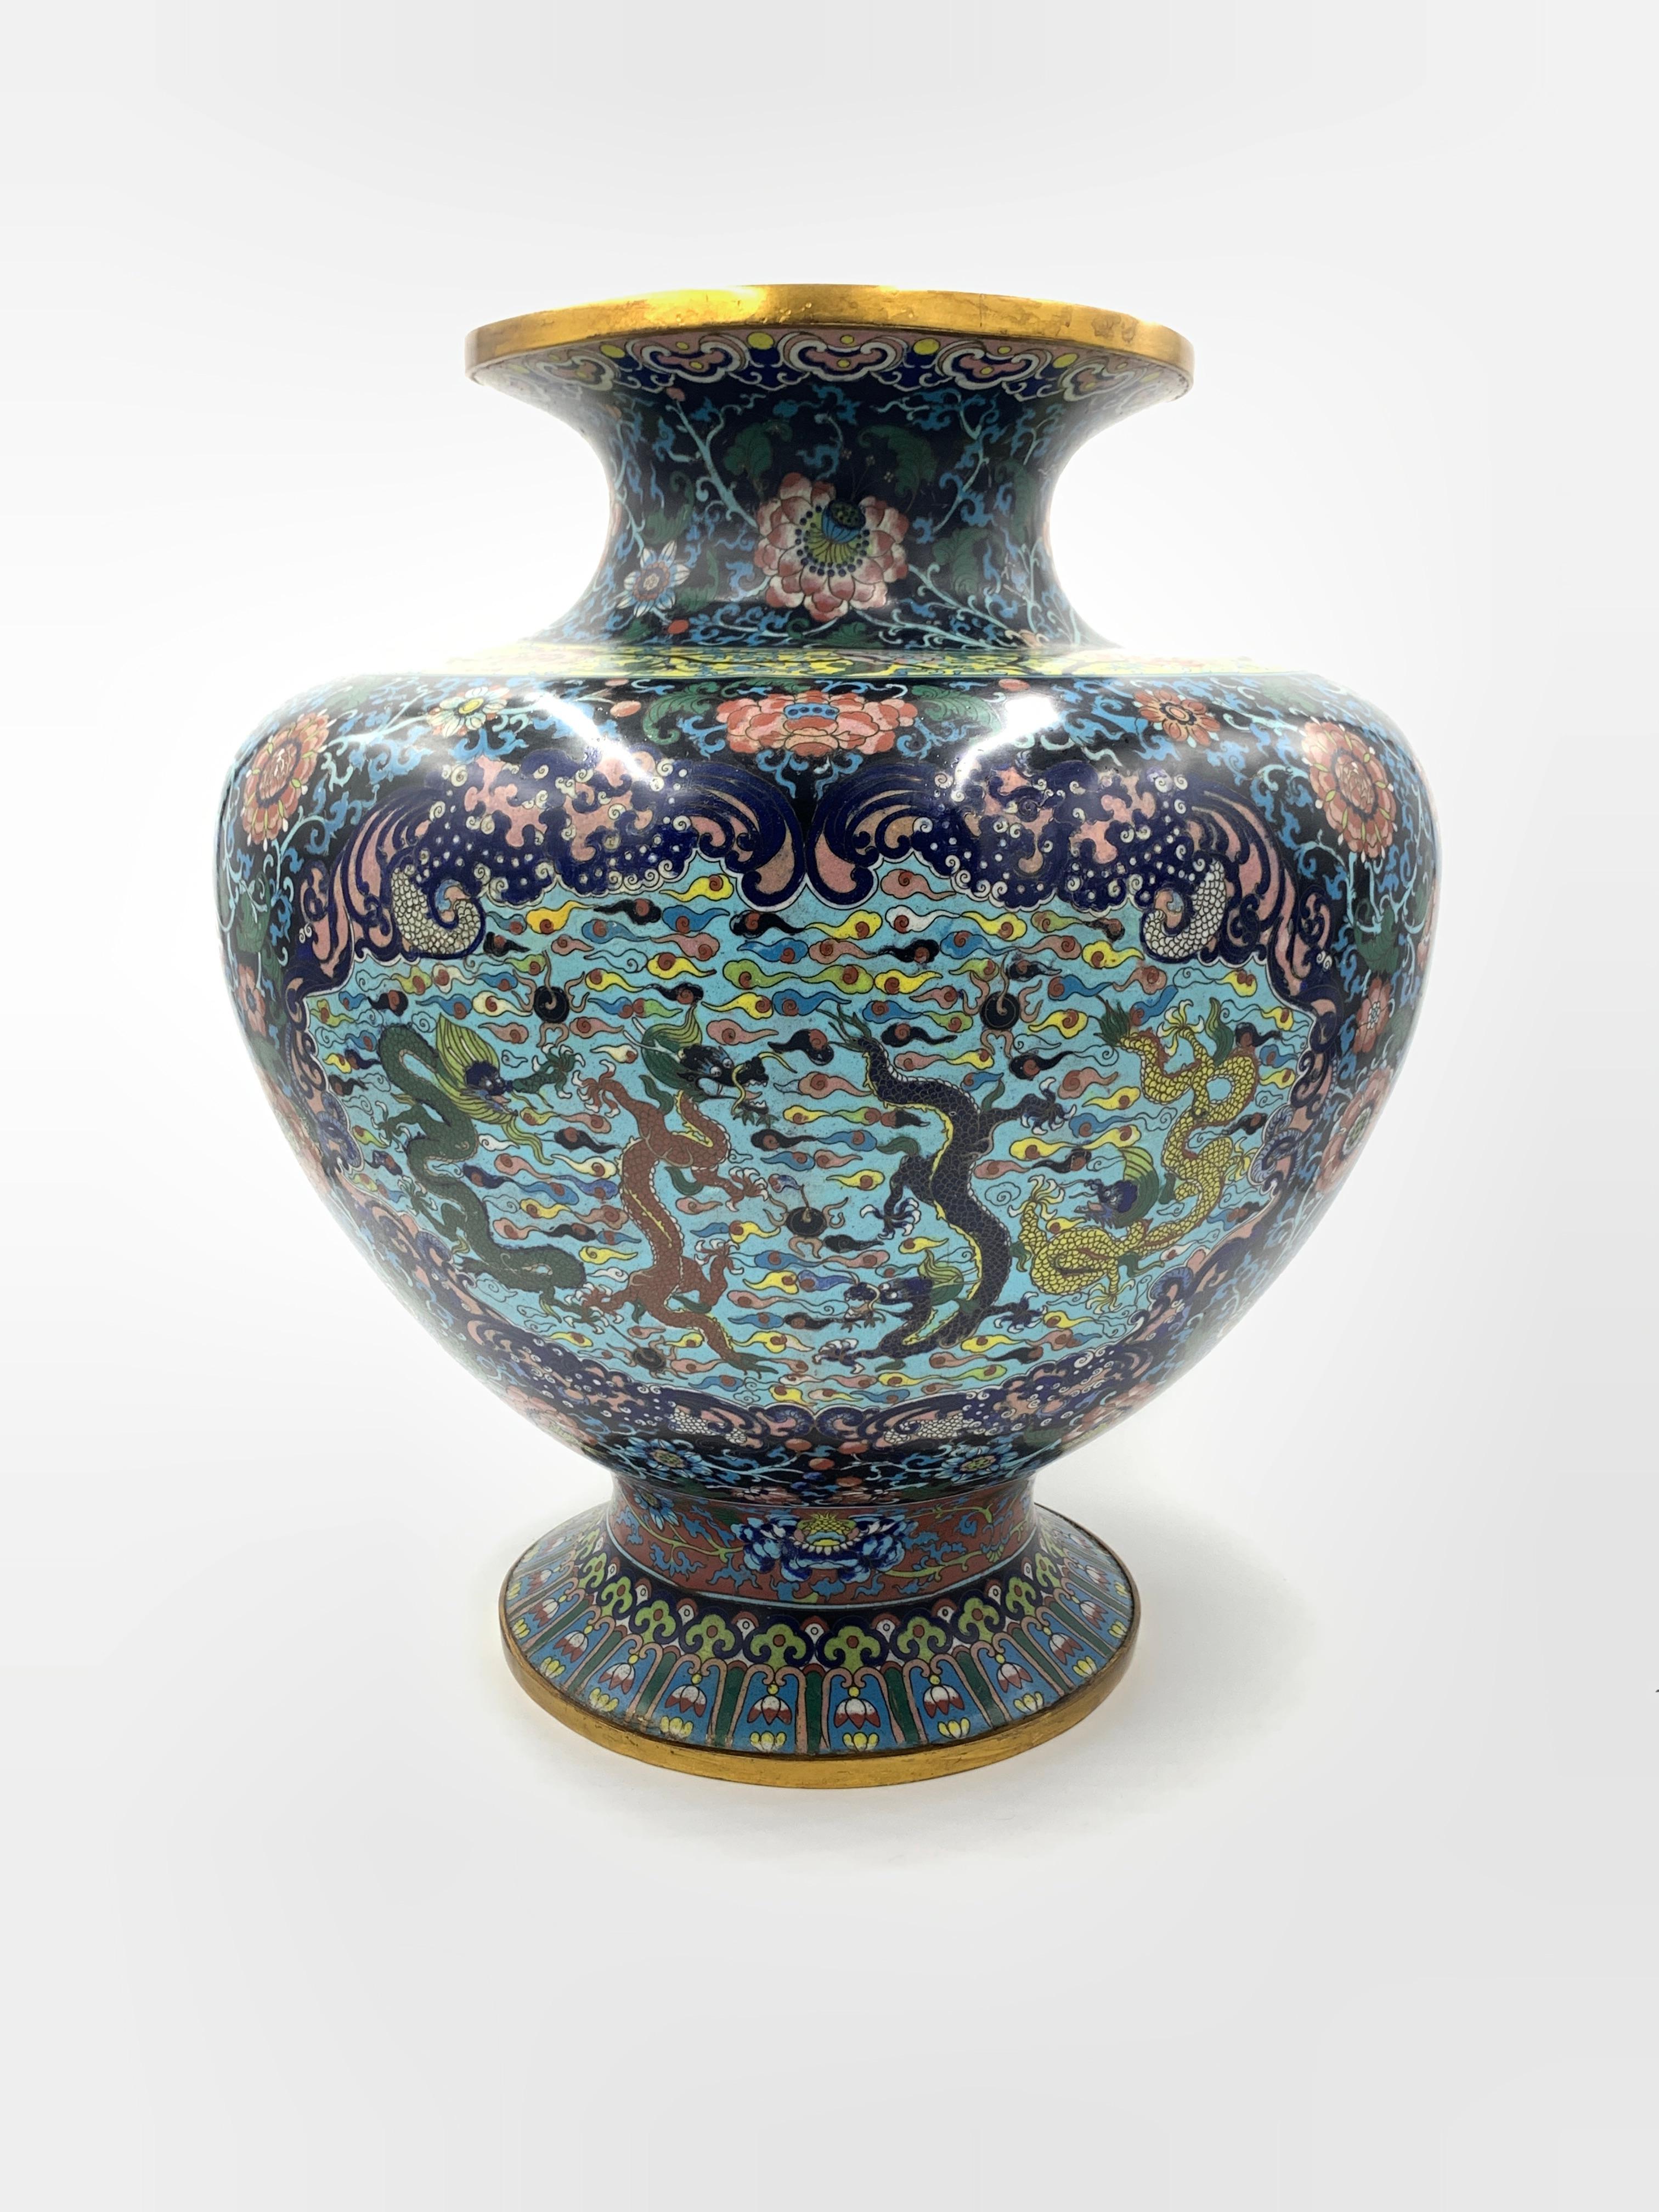 Ce vase chinois en laiton est orné d'un ravissant motif floral cloisonné en émail. L'élégant vase repose sur une base ronde étroite avec un court col en entonnoir. Les motifs floraux et foliaires en cloisonné sont soigneusement détaillés et